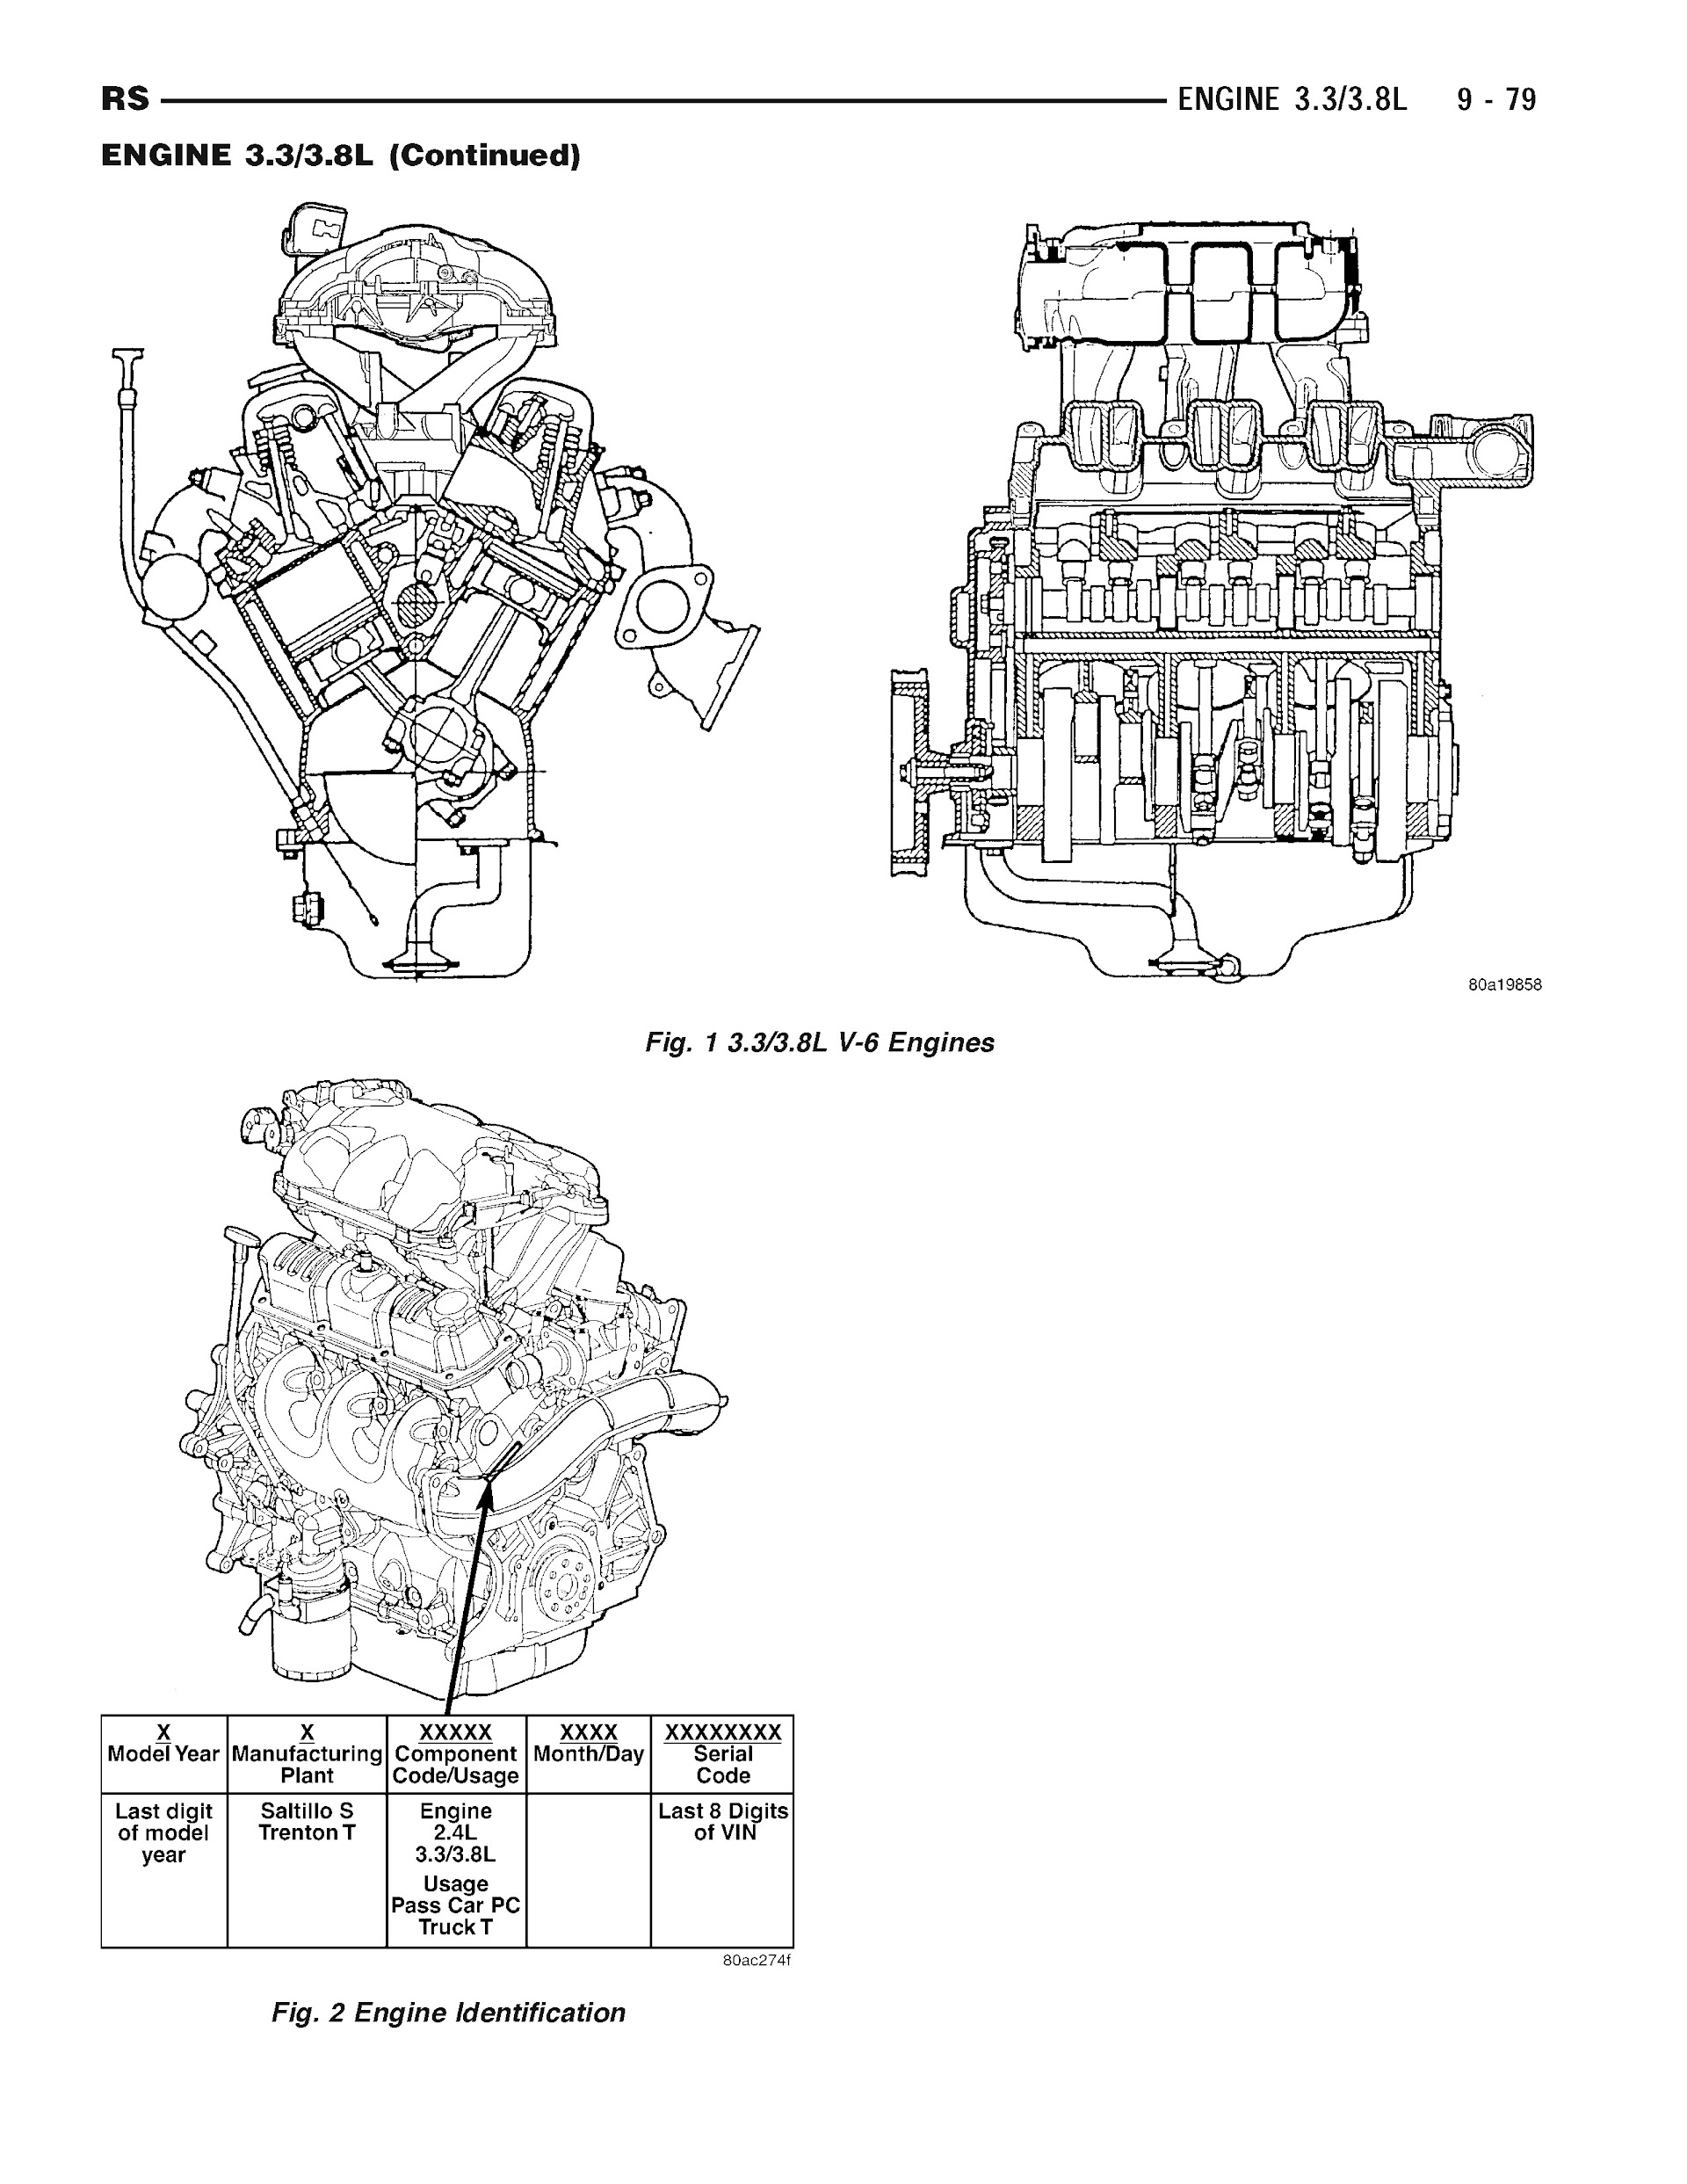 2003-2007 Dodge Grand Caravan Repair Manual, Engine 3.3L and 3.8L